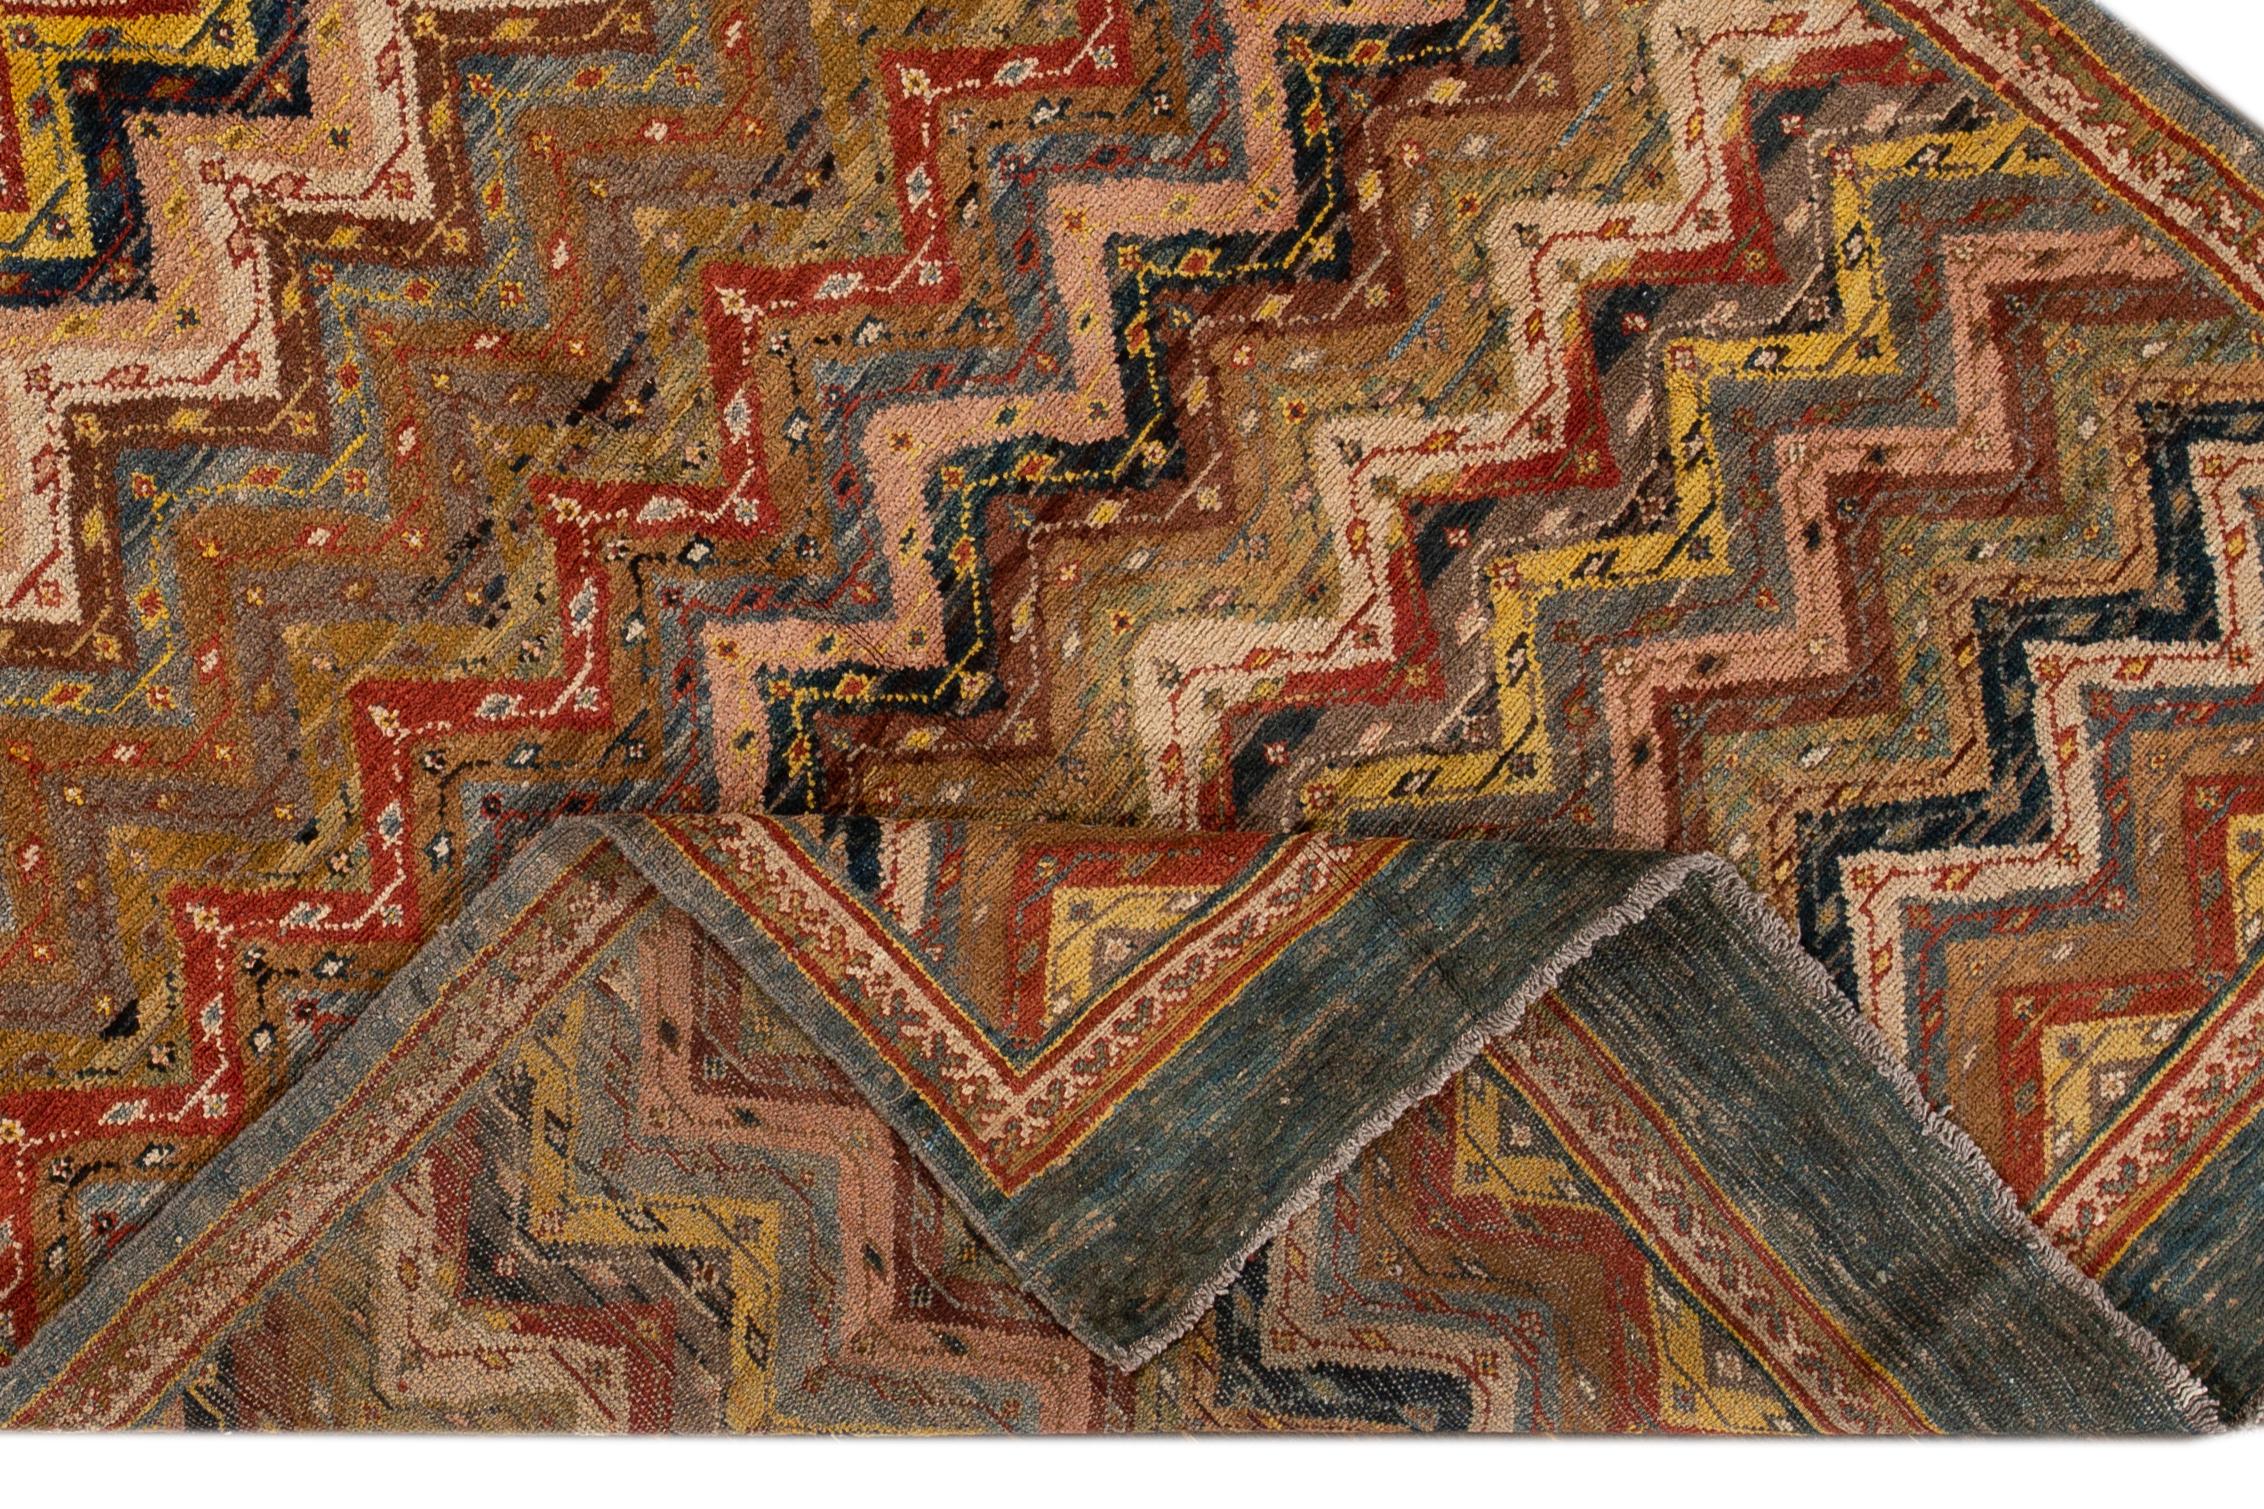 Magnifique tapis persan vintage en laine, avec un fond beige et des accents multicolores dans un motif géométrique général.

Ce tapis mesure 5'8